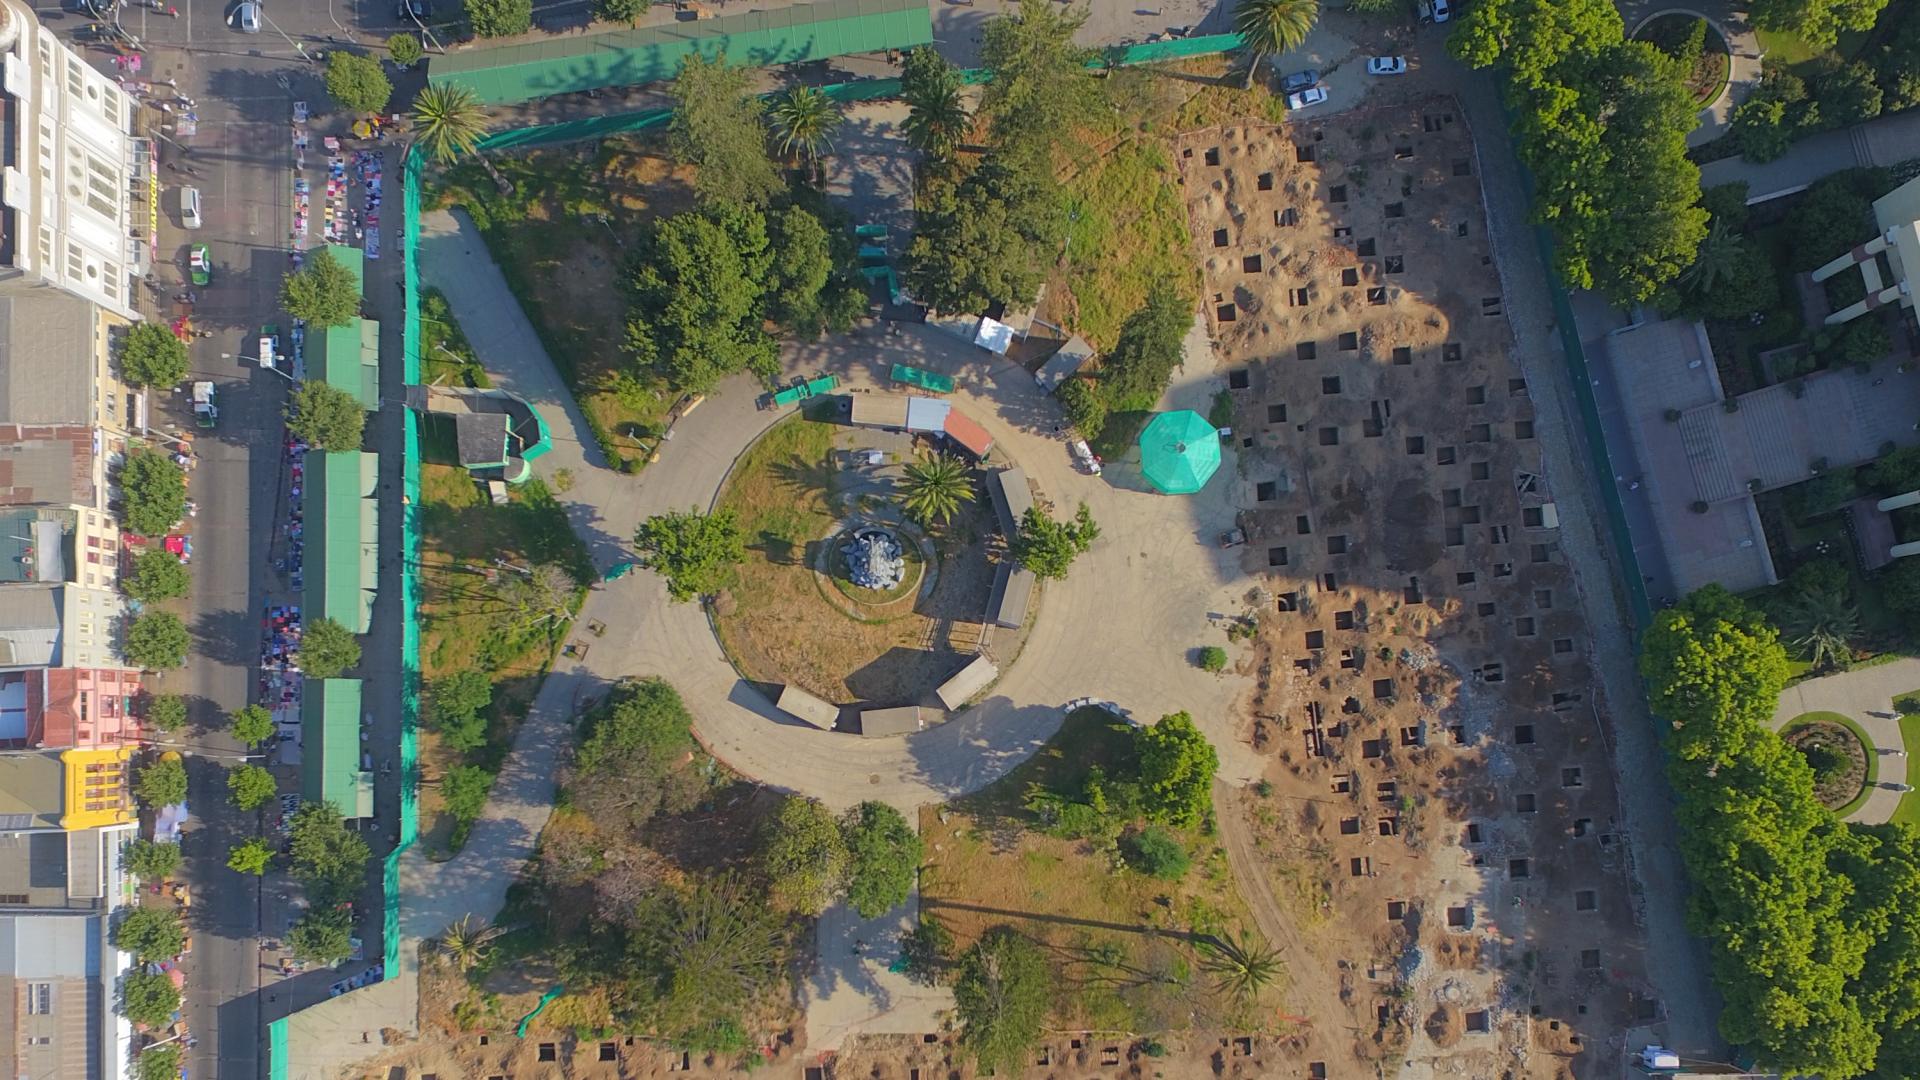 Vista de detalle de los trabajos arqueológicos en Plaza O'Higgins realizados en 2017.